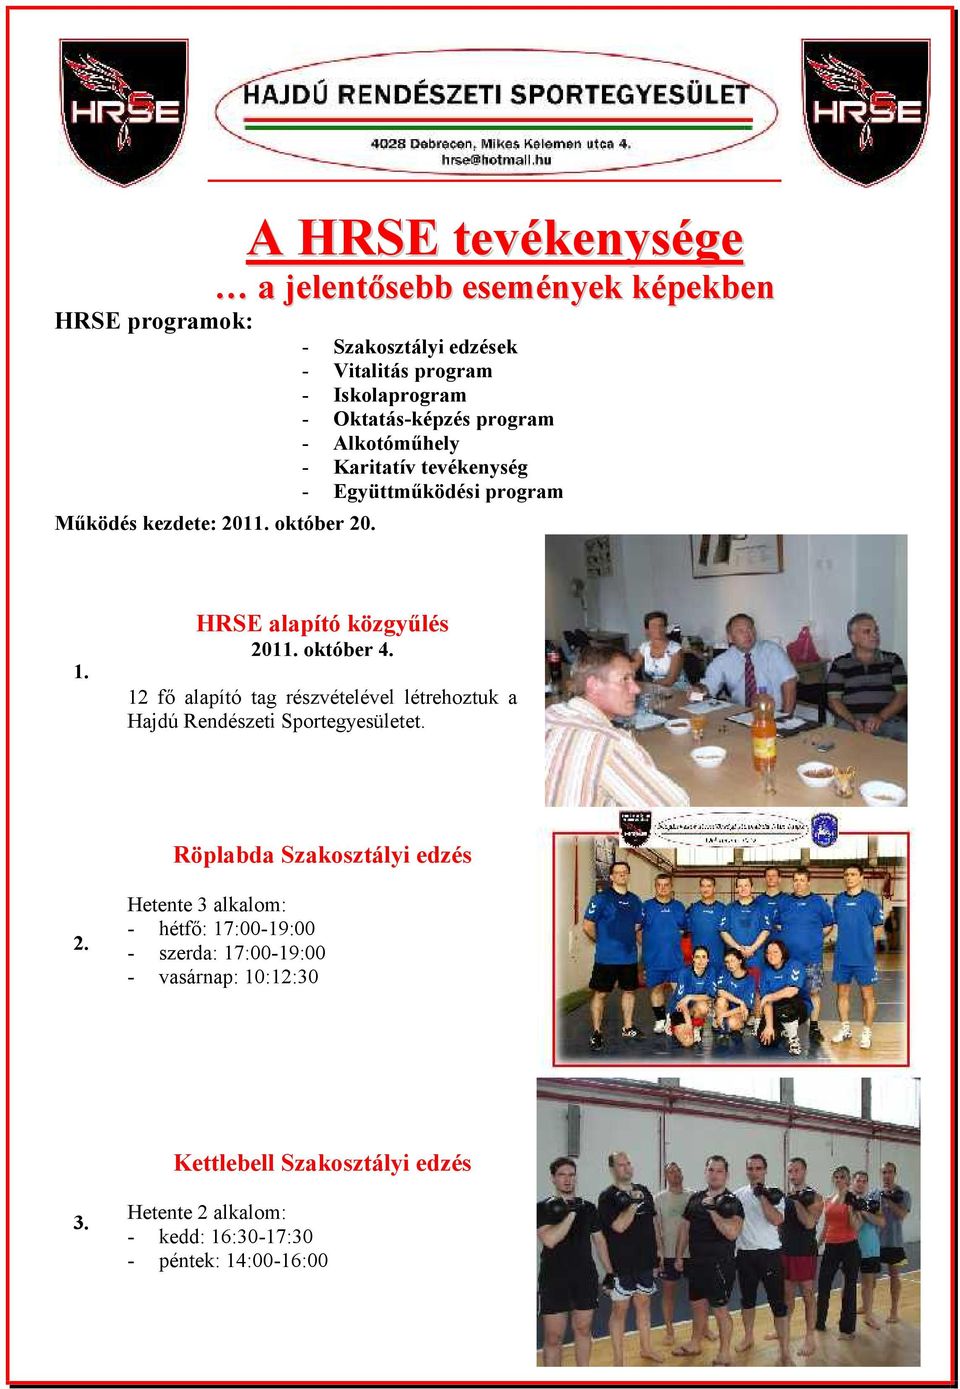 12 fő alapító tag részvételével létrehoztuk a Hajdú Rendészeti Sportegyesületet. Röplabda Szakosztályi edzés 2.